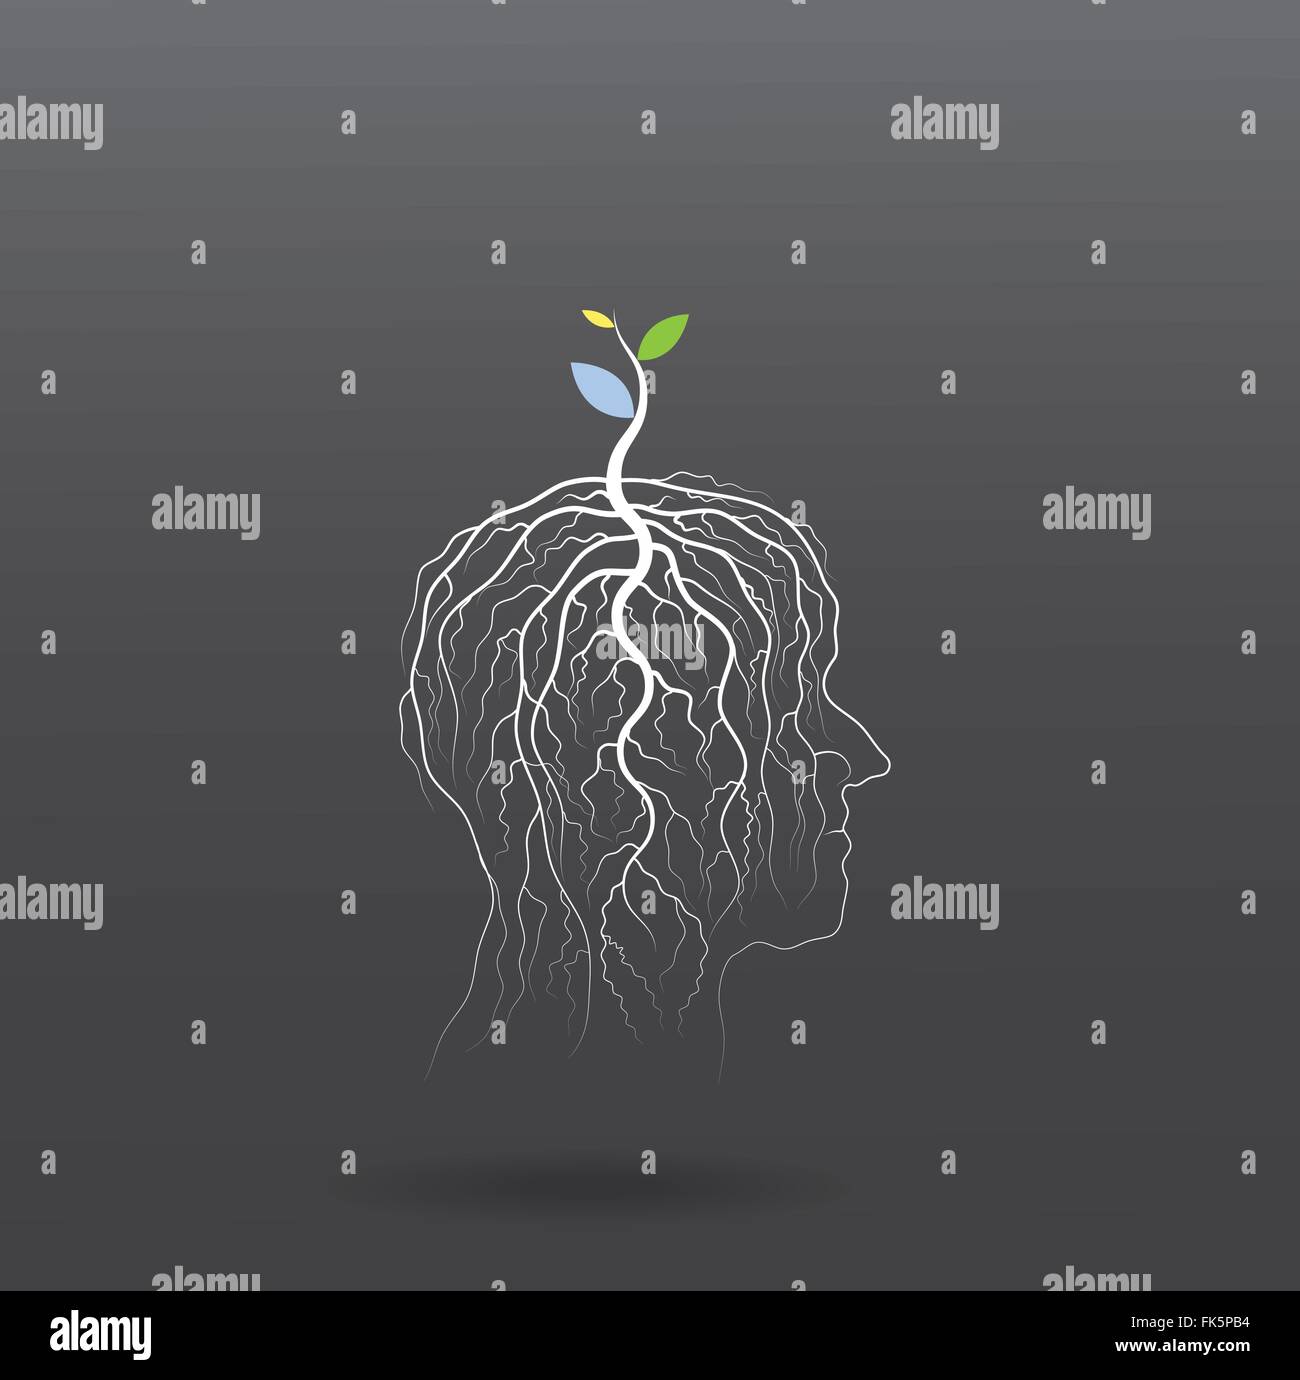 Denke, grüne Konzept. Baum der grüne Idee Shooting wachsen am menschlichen Kopf Symbol. Geschäfts- und grüne industrielle Idee. Vektor-illustration Stock Vektor